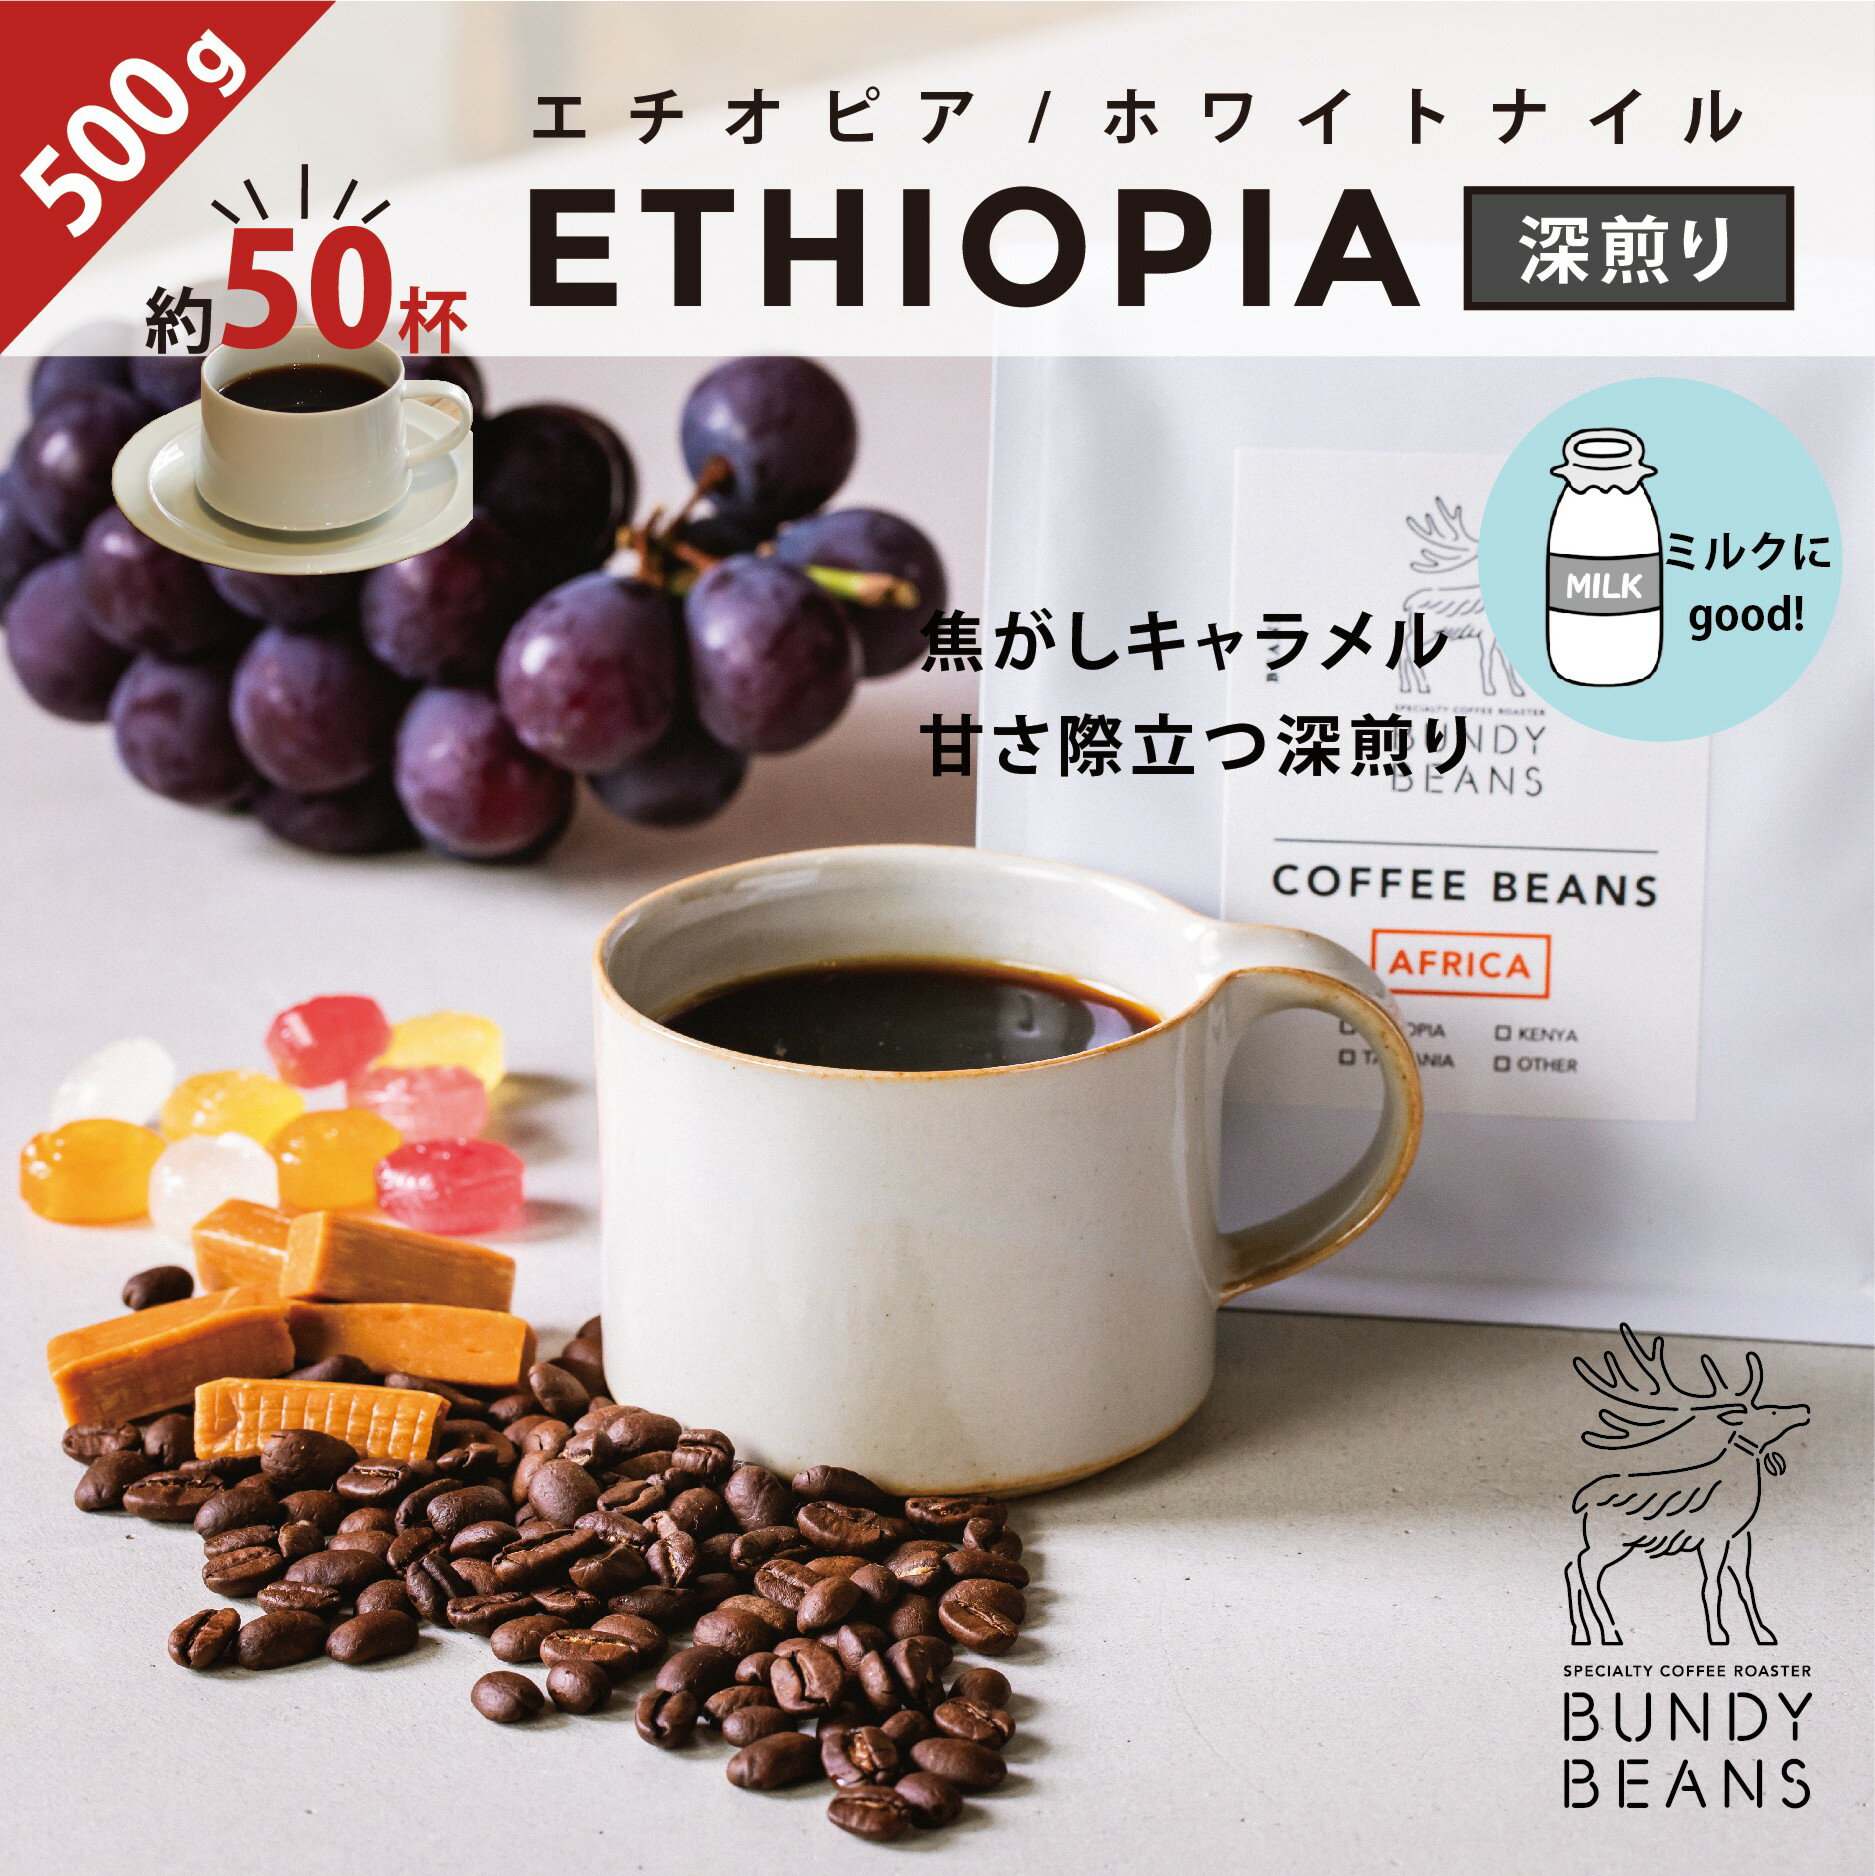 バンディービーンズ コーヒー 500gエチオピア/ETHIOPIA 深煎り ナチュラル コーヒーギフト スペシャルティコーヒー コーヒー ギフト アイスコーヒー 珈琲 カフェオレ gift カフェオレベース 味比べ 人気 コーヒーギフトセット ギフトセット コーヒー豆